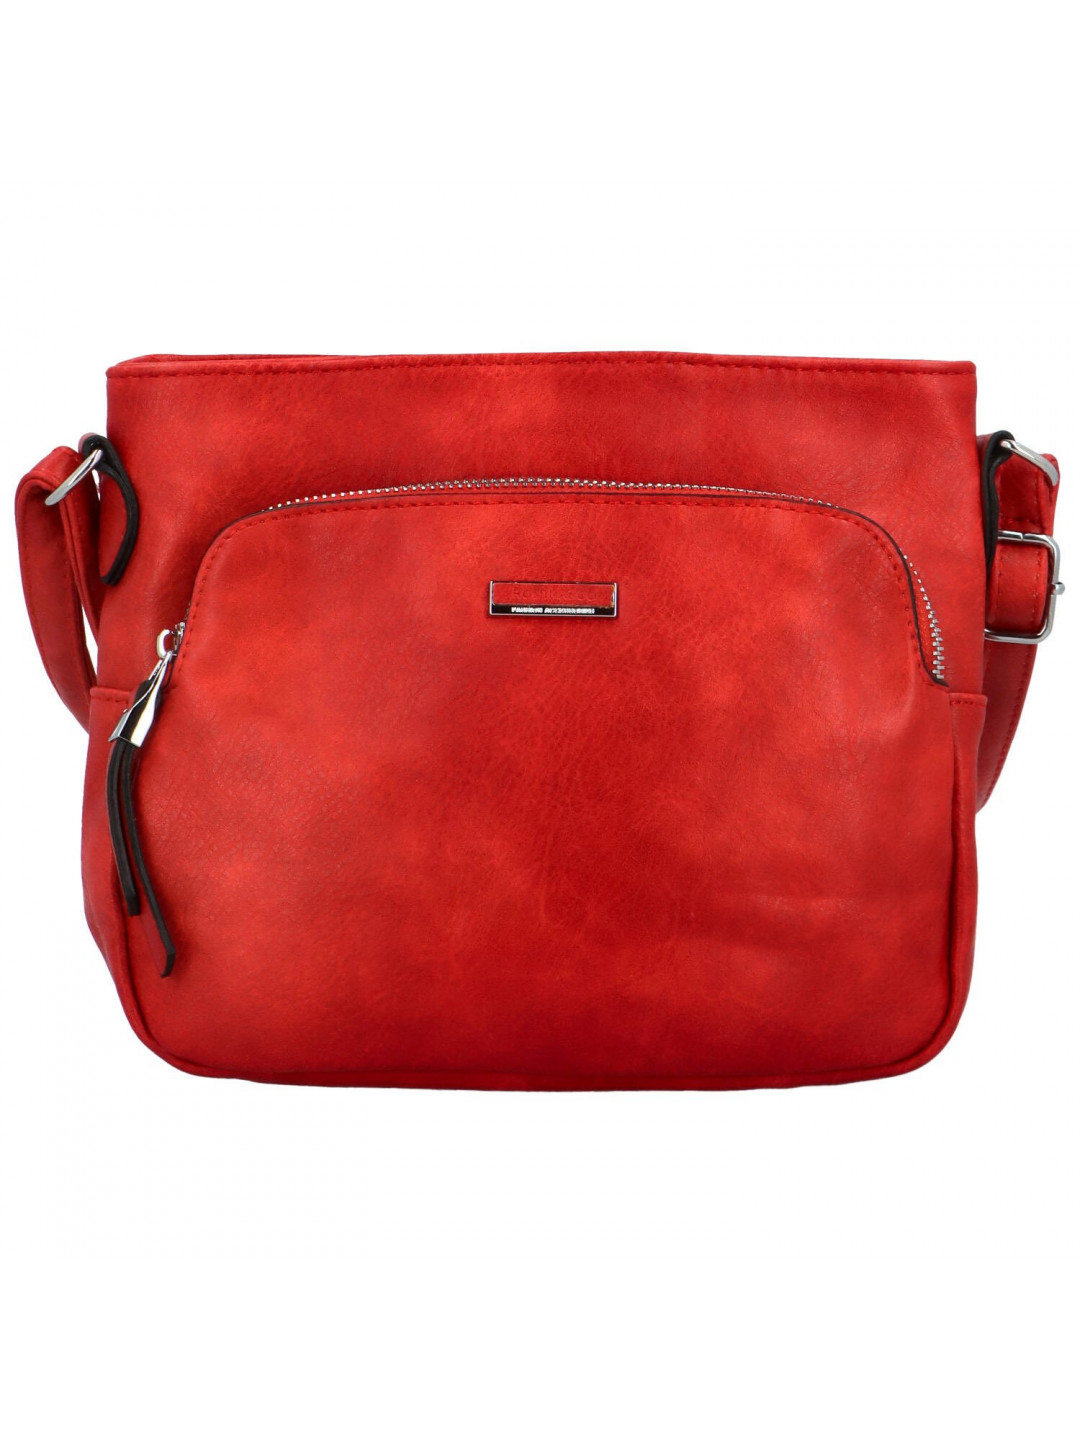 Dámská crossbody kabelka červená – Romina & Co Bags Risttin